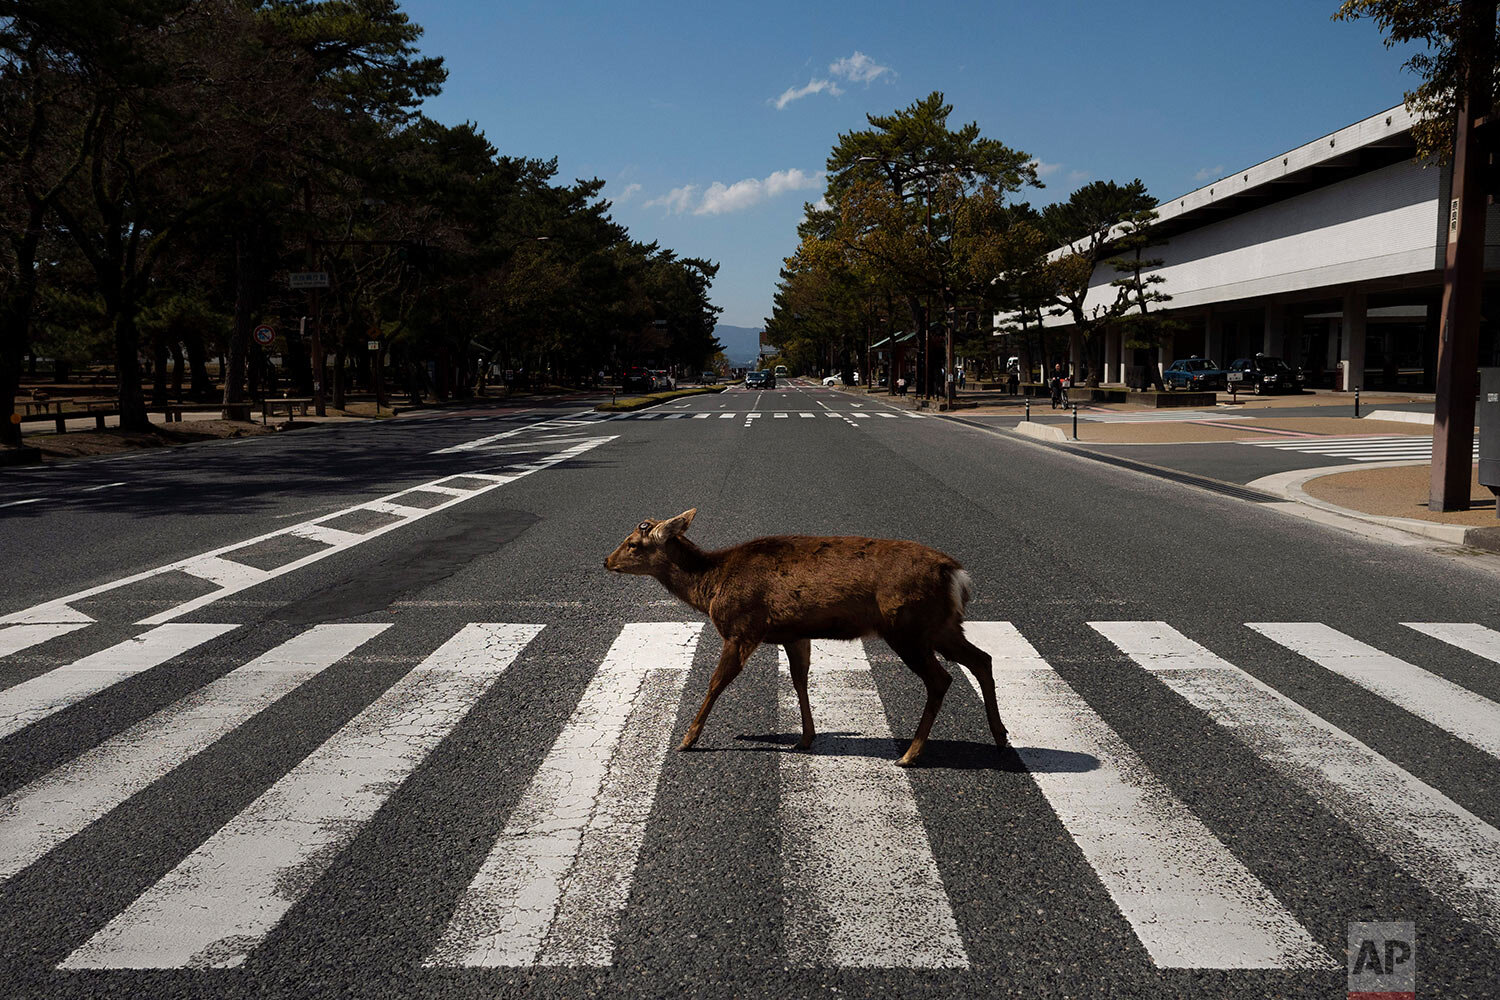  A deer walks across a pedestrian crossing in Nara, Japan, Thursday, March 19, 2020. (AP Photo/Jae C. Hong) 